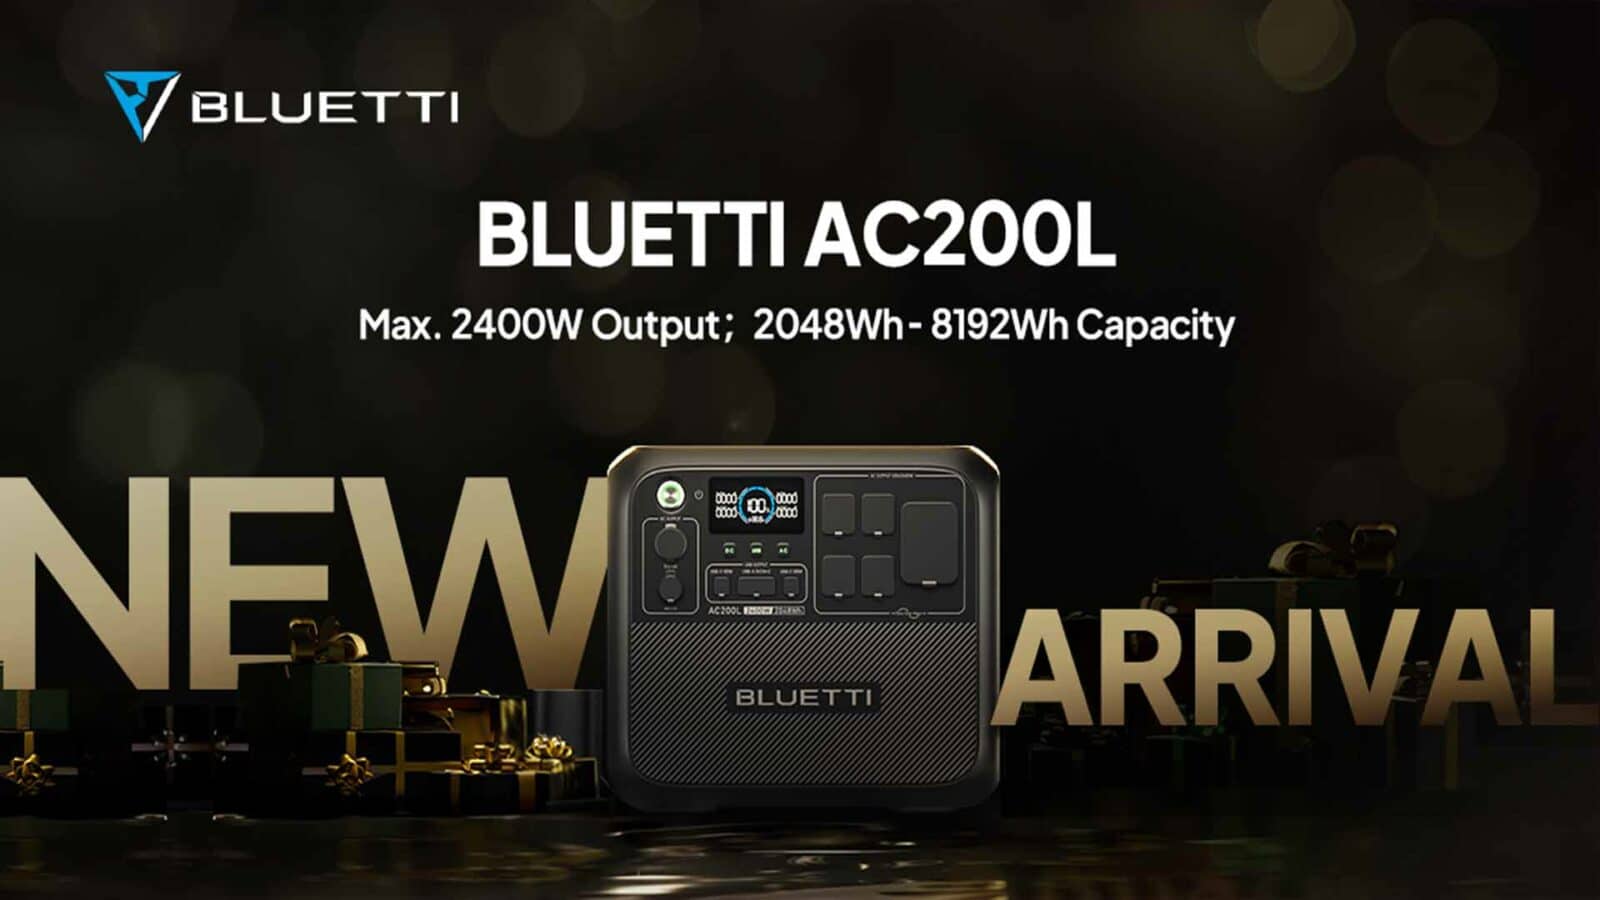 Поступила новая модель bluetti ac200l с максимальной мощностью 2400 Вт и мощностью 8192 Втч.